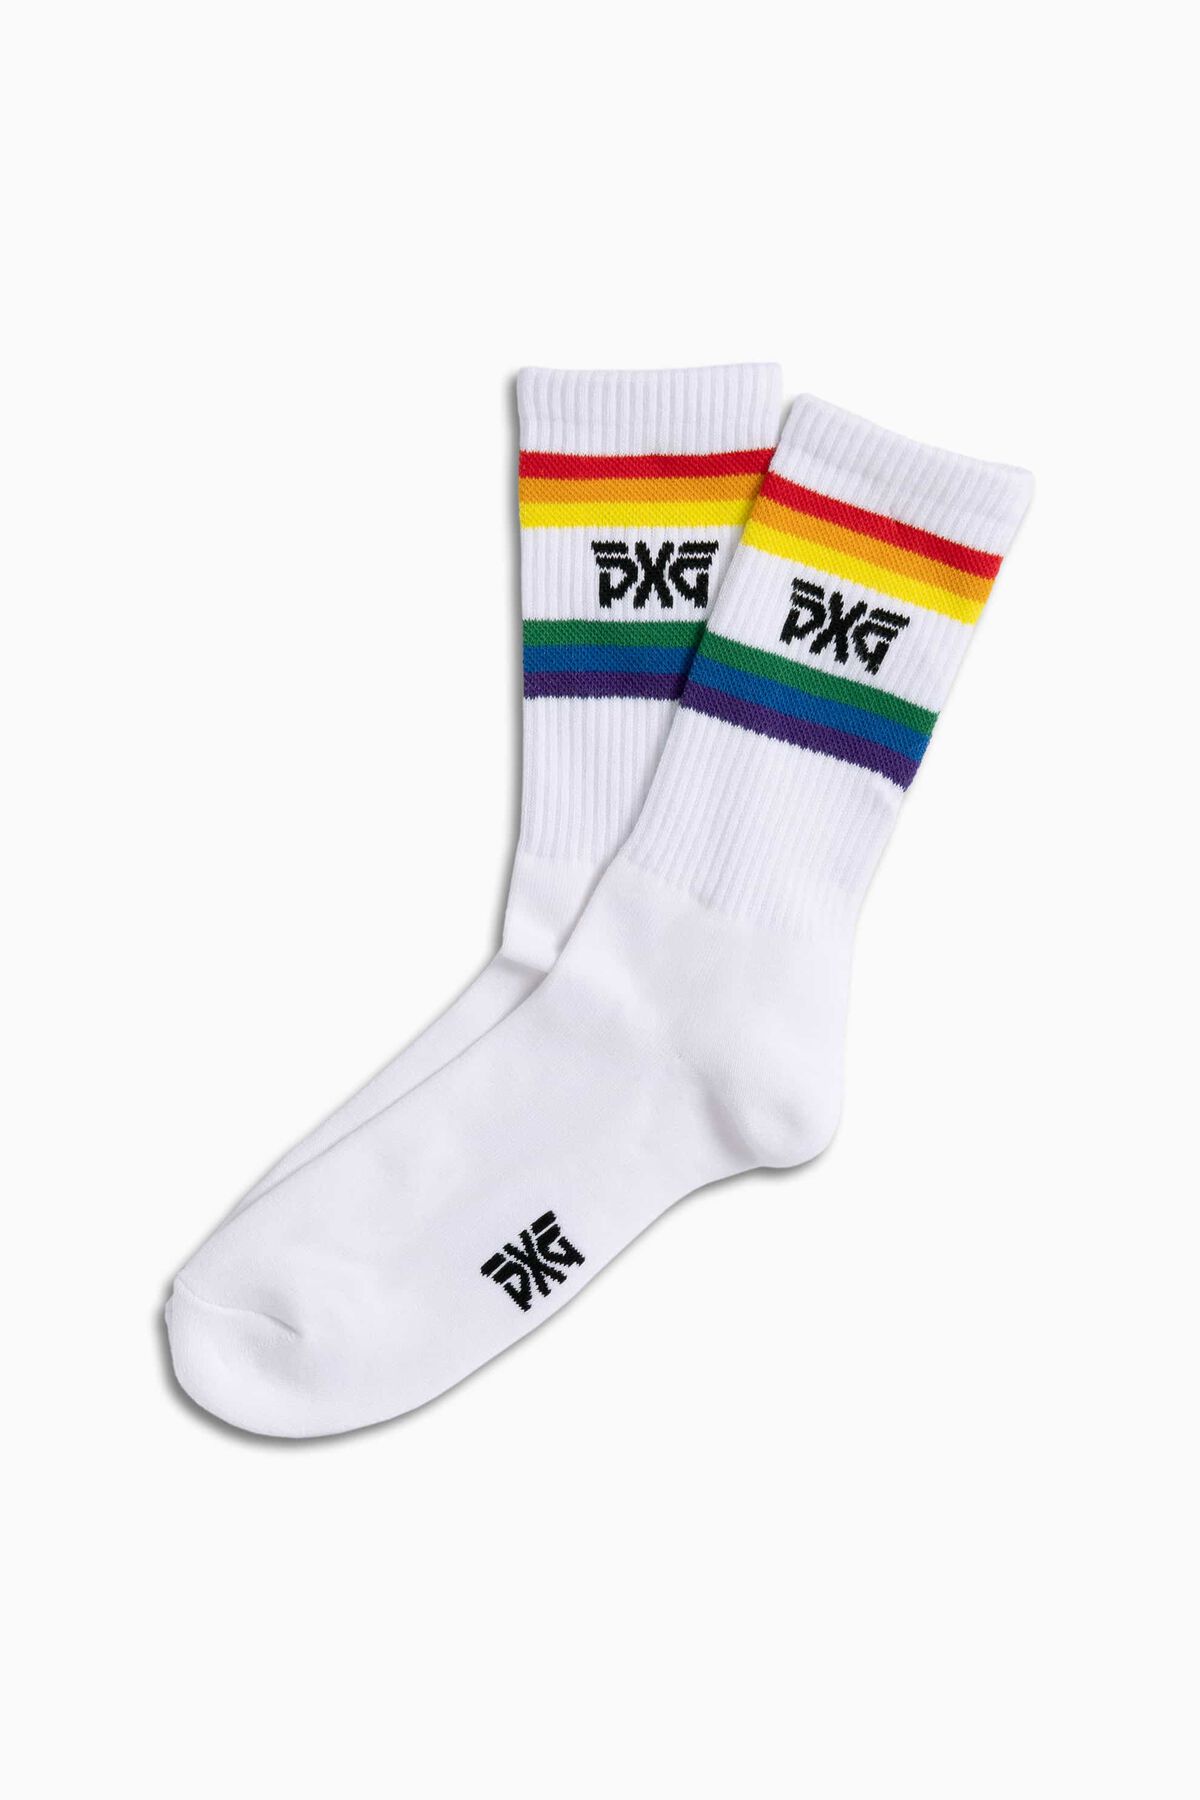 Buy Men\'s Pride Crew Socks | PXG